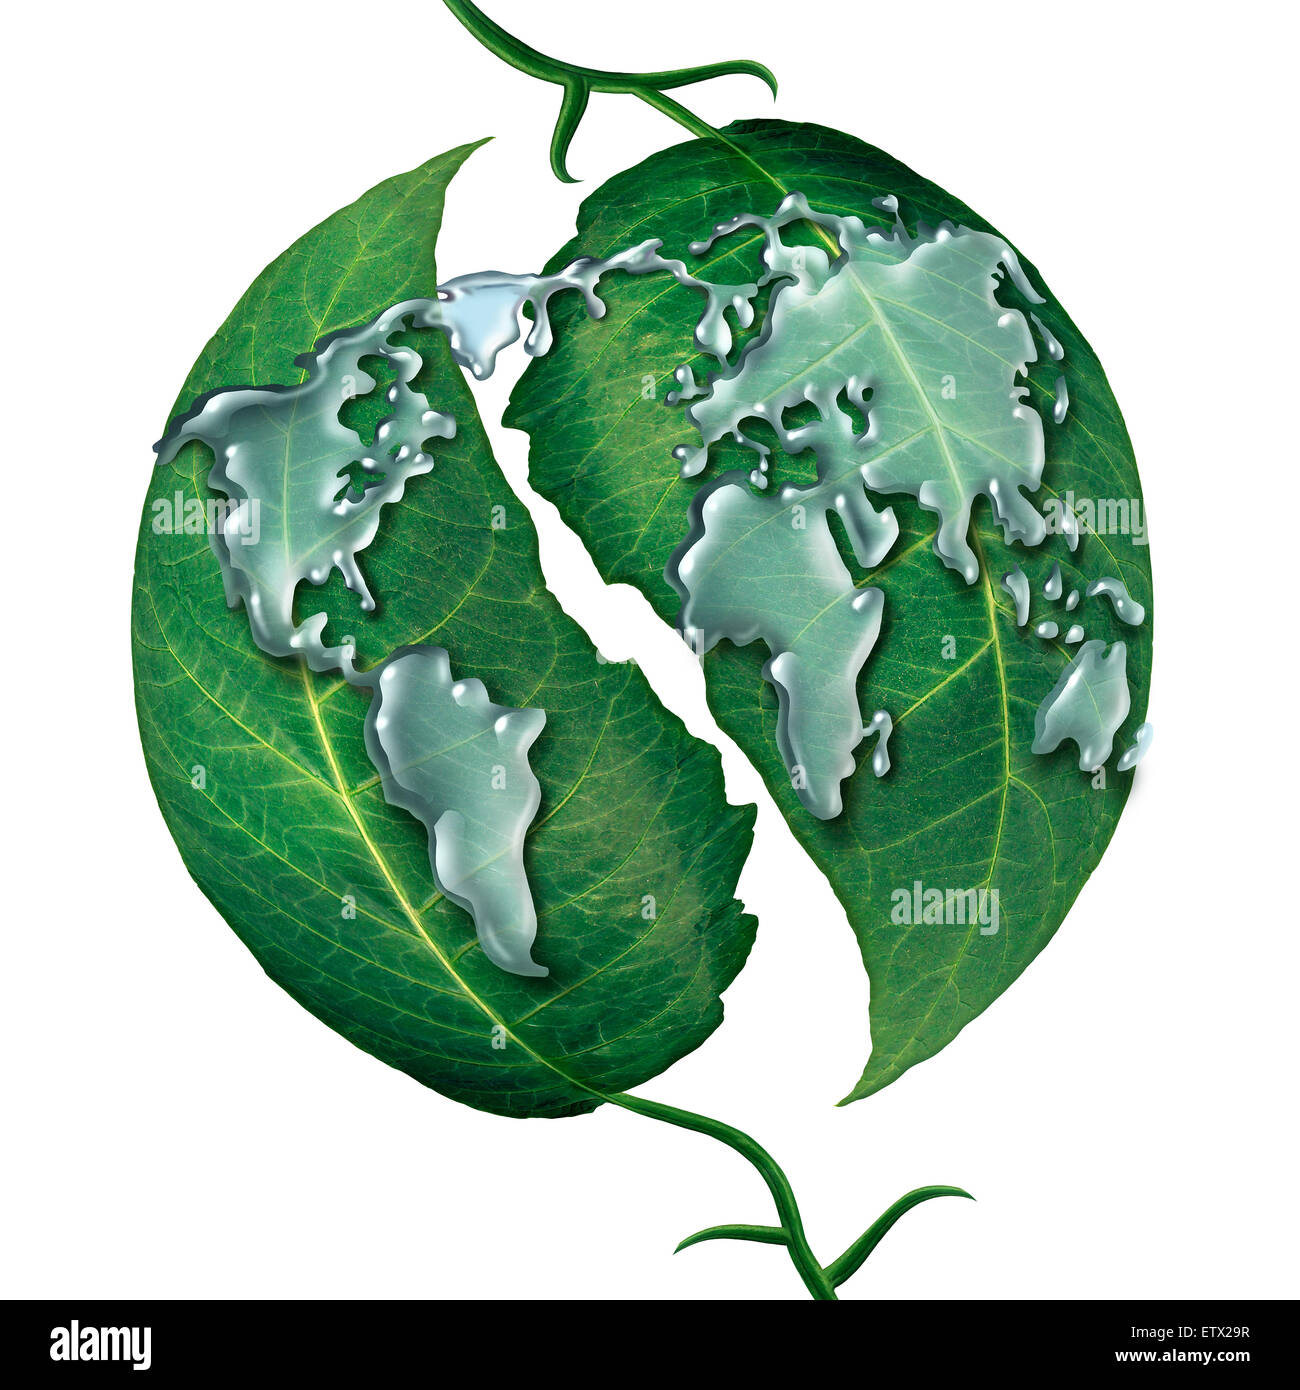 Concepto de la gota de agua hoja mundial como un grupo de líquido en forma de gotas de lluvia como el mapa de earrth sobre hojas verdes como símbolo y metáfora para la ecología protección global de agua limpia o aislado sobre un fondo blanco. Foto de stock